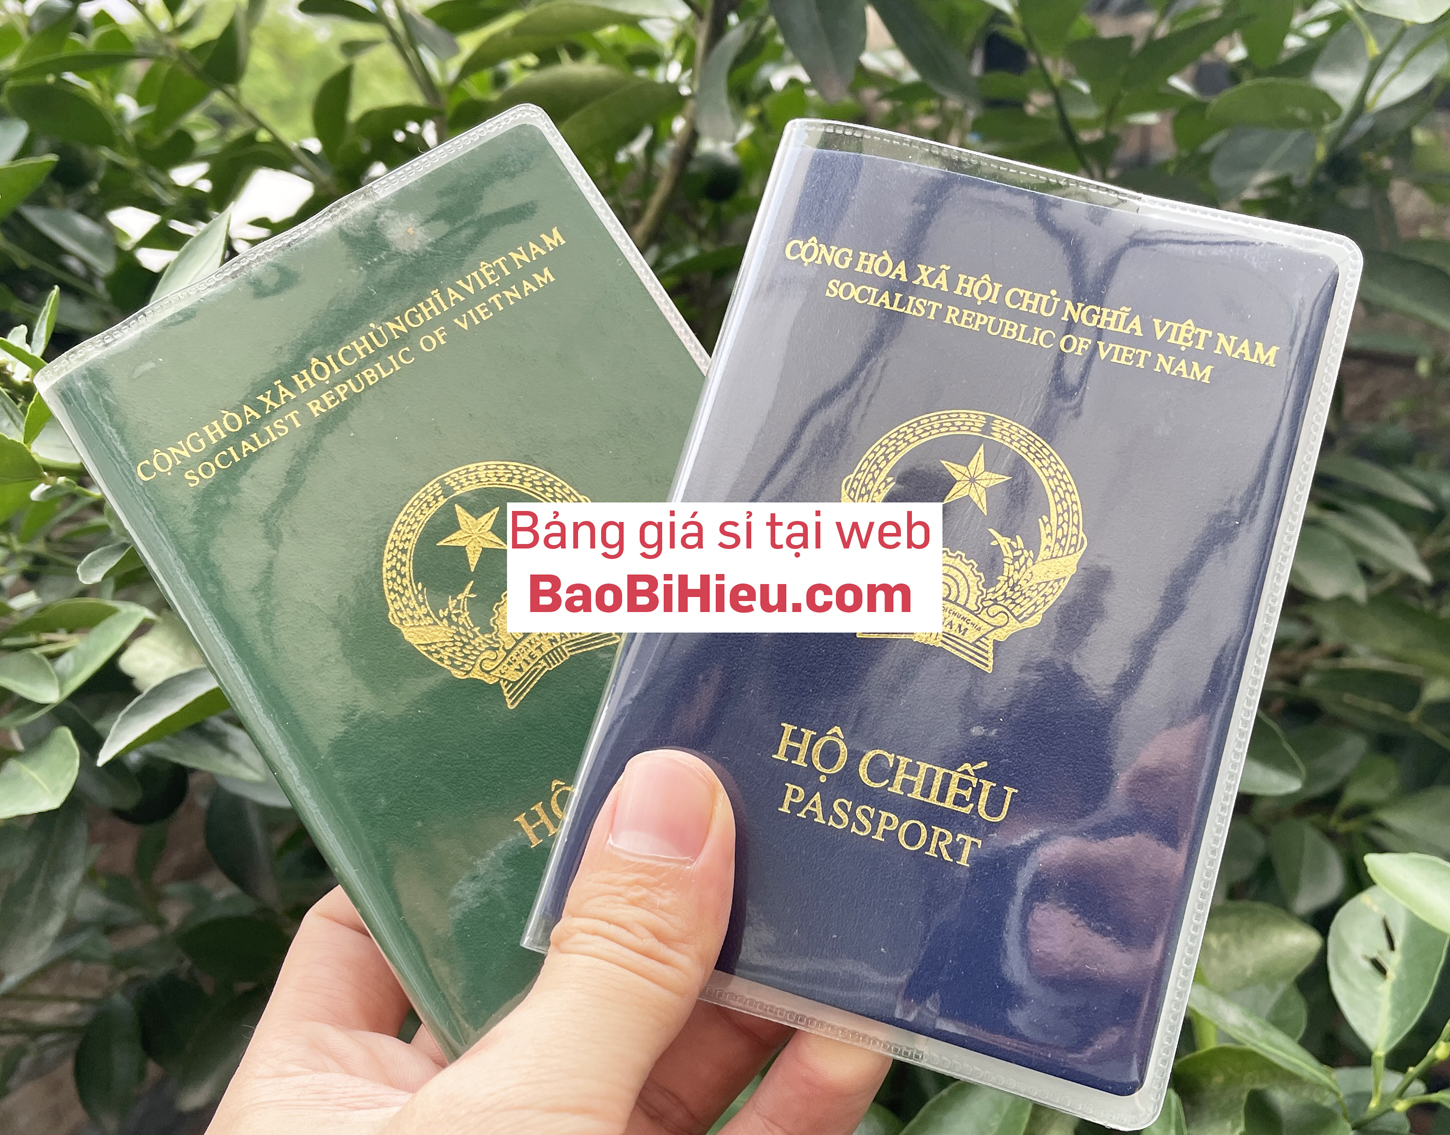 Bìa vỏ bọc bảo vệ hộ chiếu, passport PVC trong suốt.